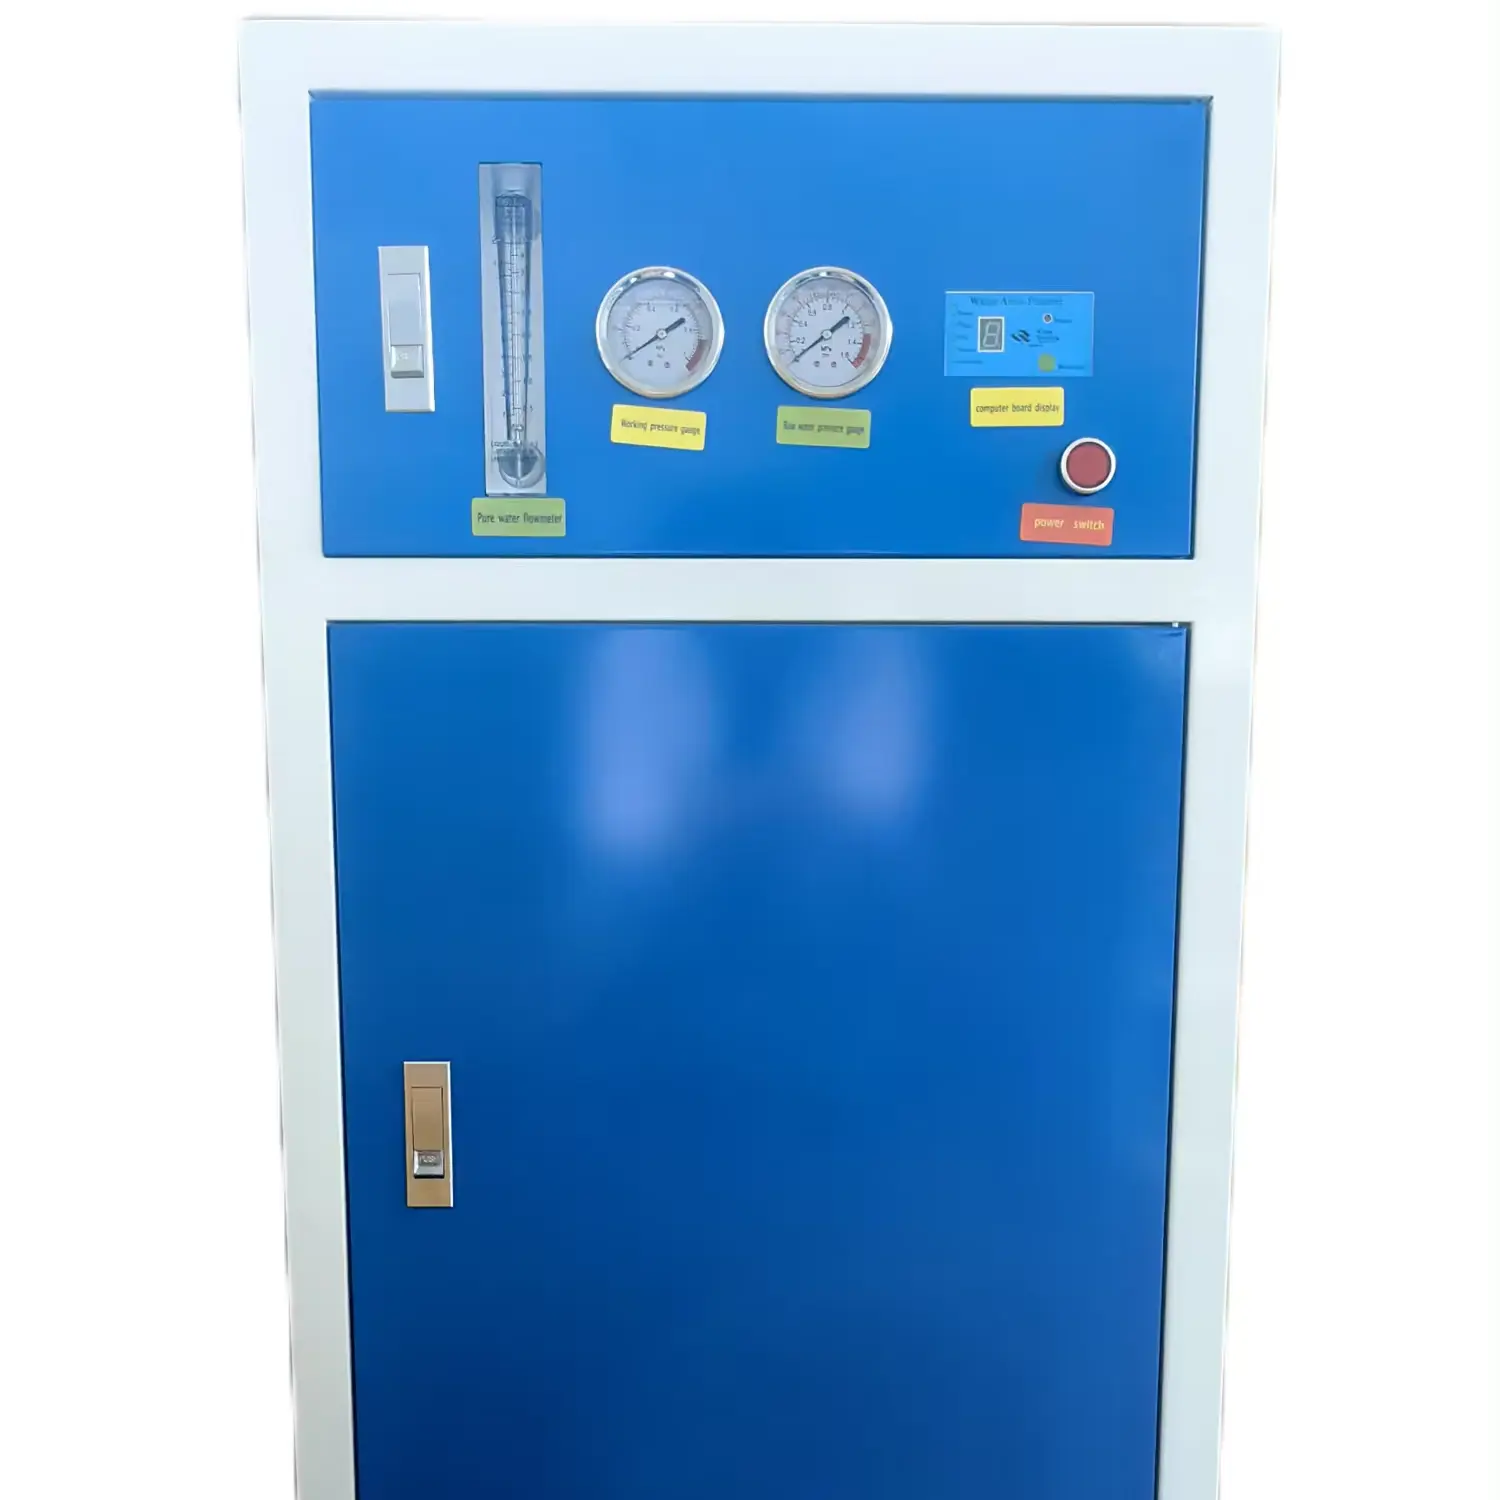 800 GPD-Wasserfilter Umkehrosmose Filter A Eau Depuratore Acqua Purification Ro-Wasserreinigungsmaschine für den heimgebrauch